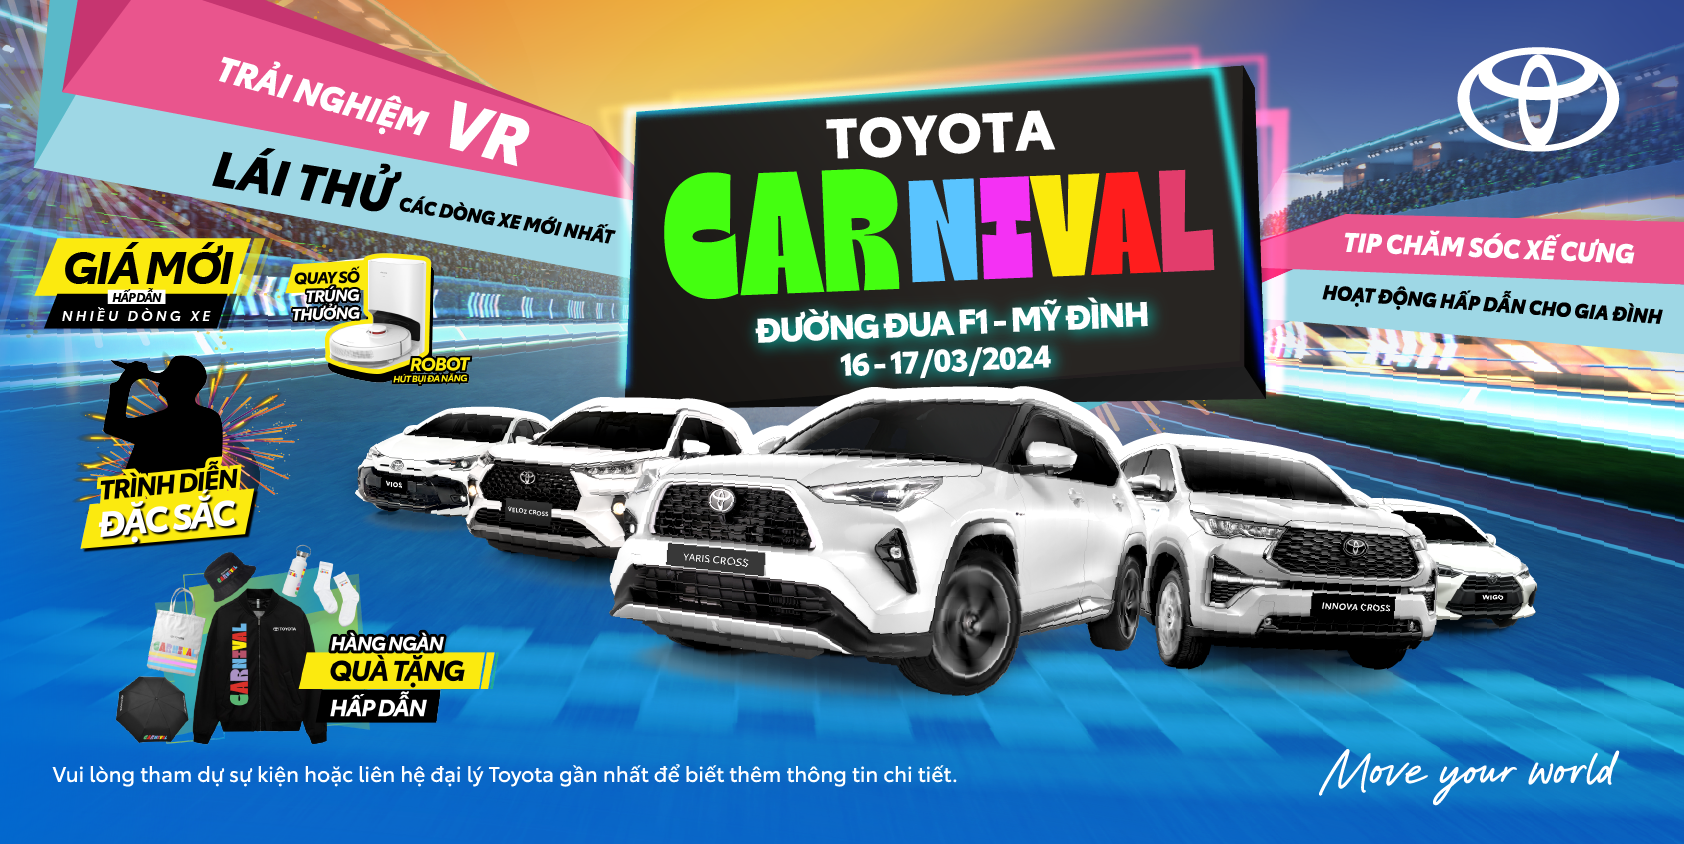 Toyota Carnival - Sự kiện lái thử và trải nghiệm các dòng xe Toyota mới nhất tại đường đua F1 - Hà Nội